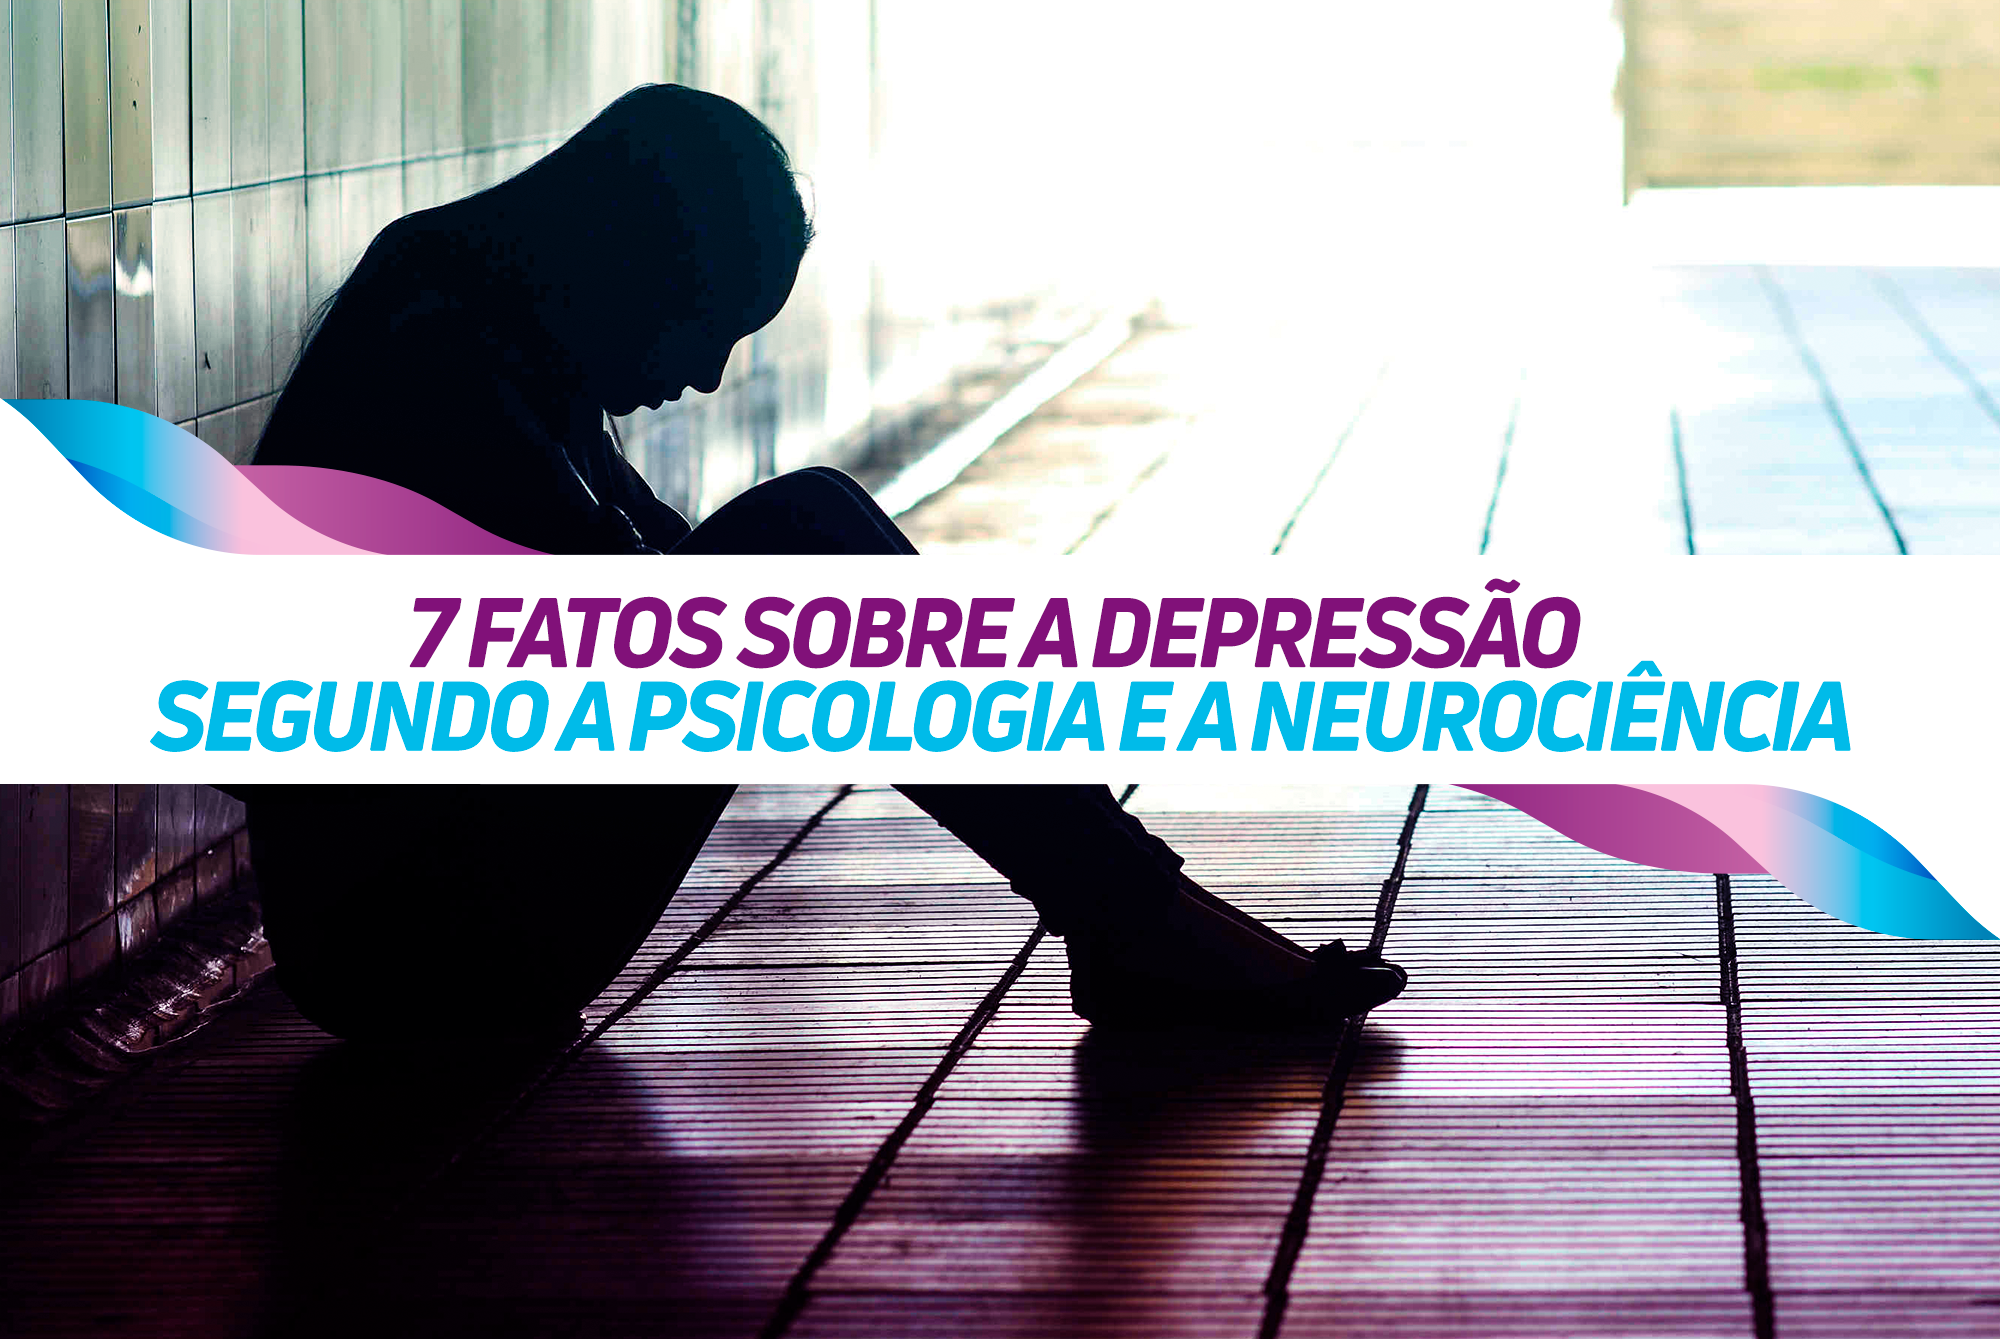 7 FATOS SOBRE A DEPRESSÃO SEGUNDO A PSICOLOGIA E A NEUROCIÊNCIA